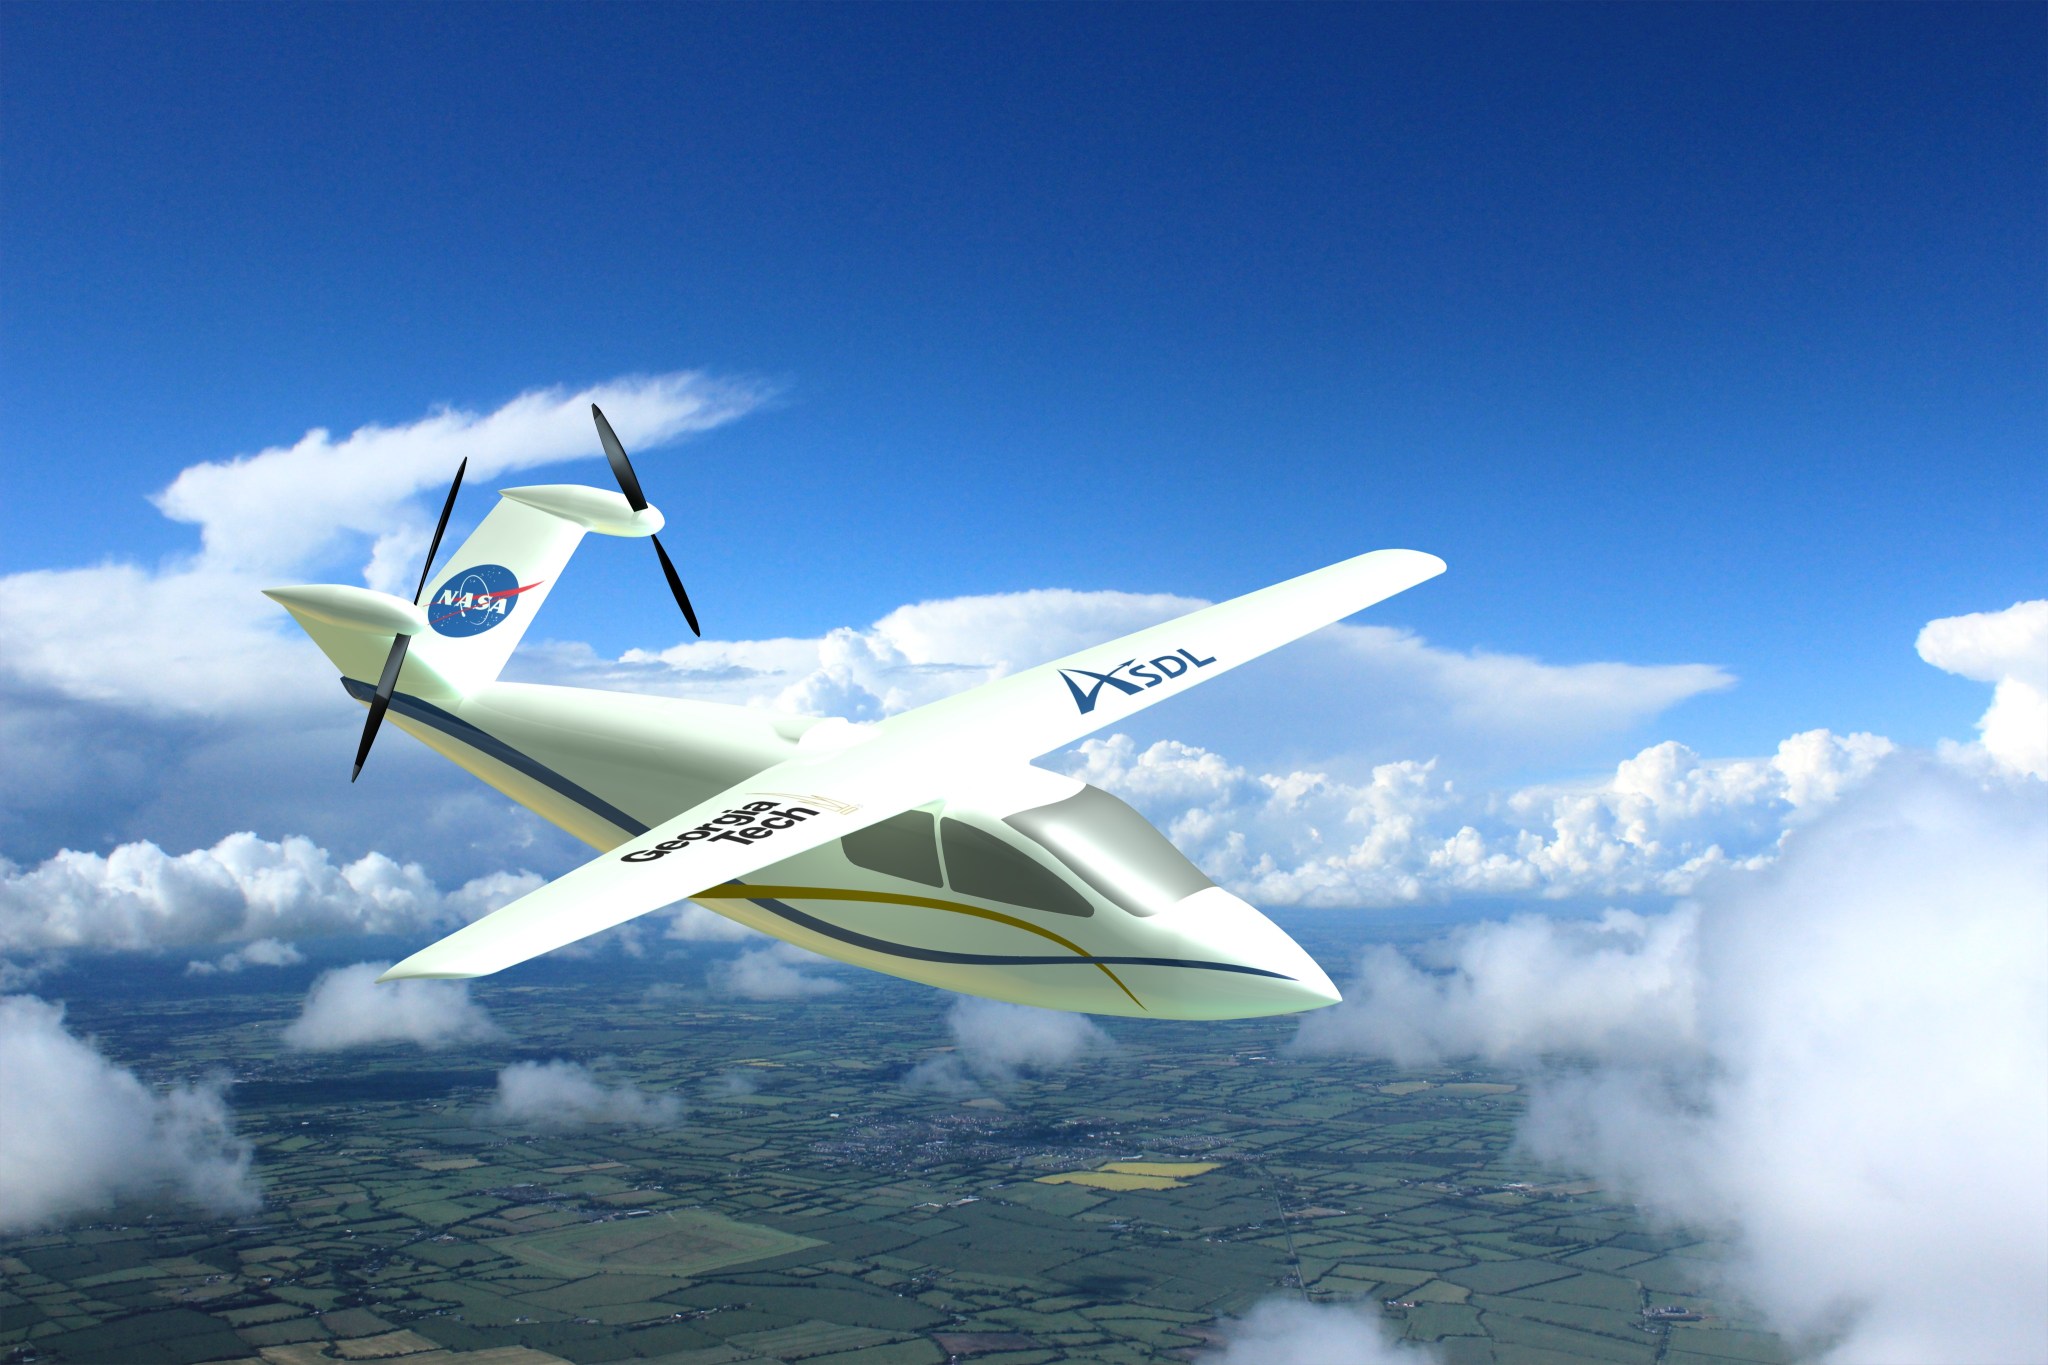 Artist concept of the Vapor future aircraft design.